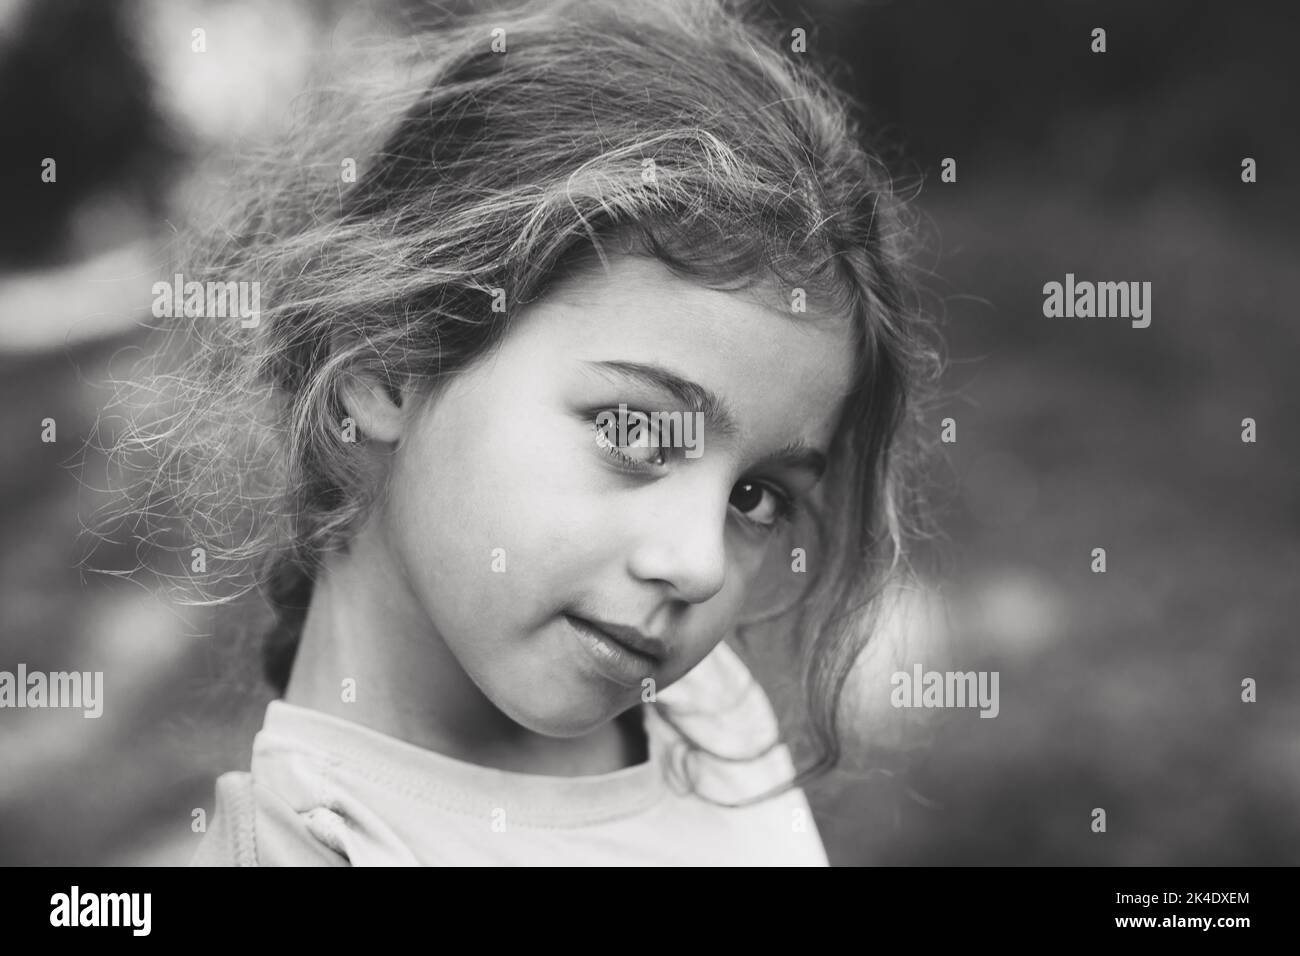 Schwarz und weiß Porträt von lächelnd niedlichen kleinen Mädchen im Sommer Park. Glückliches Kind, das die Kamera anschaut Stockfoto